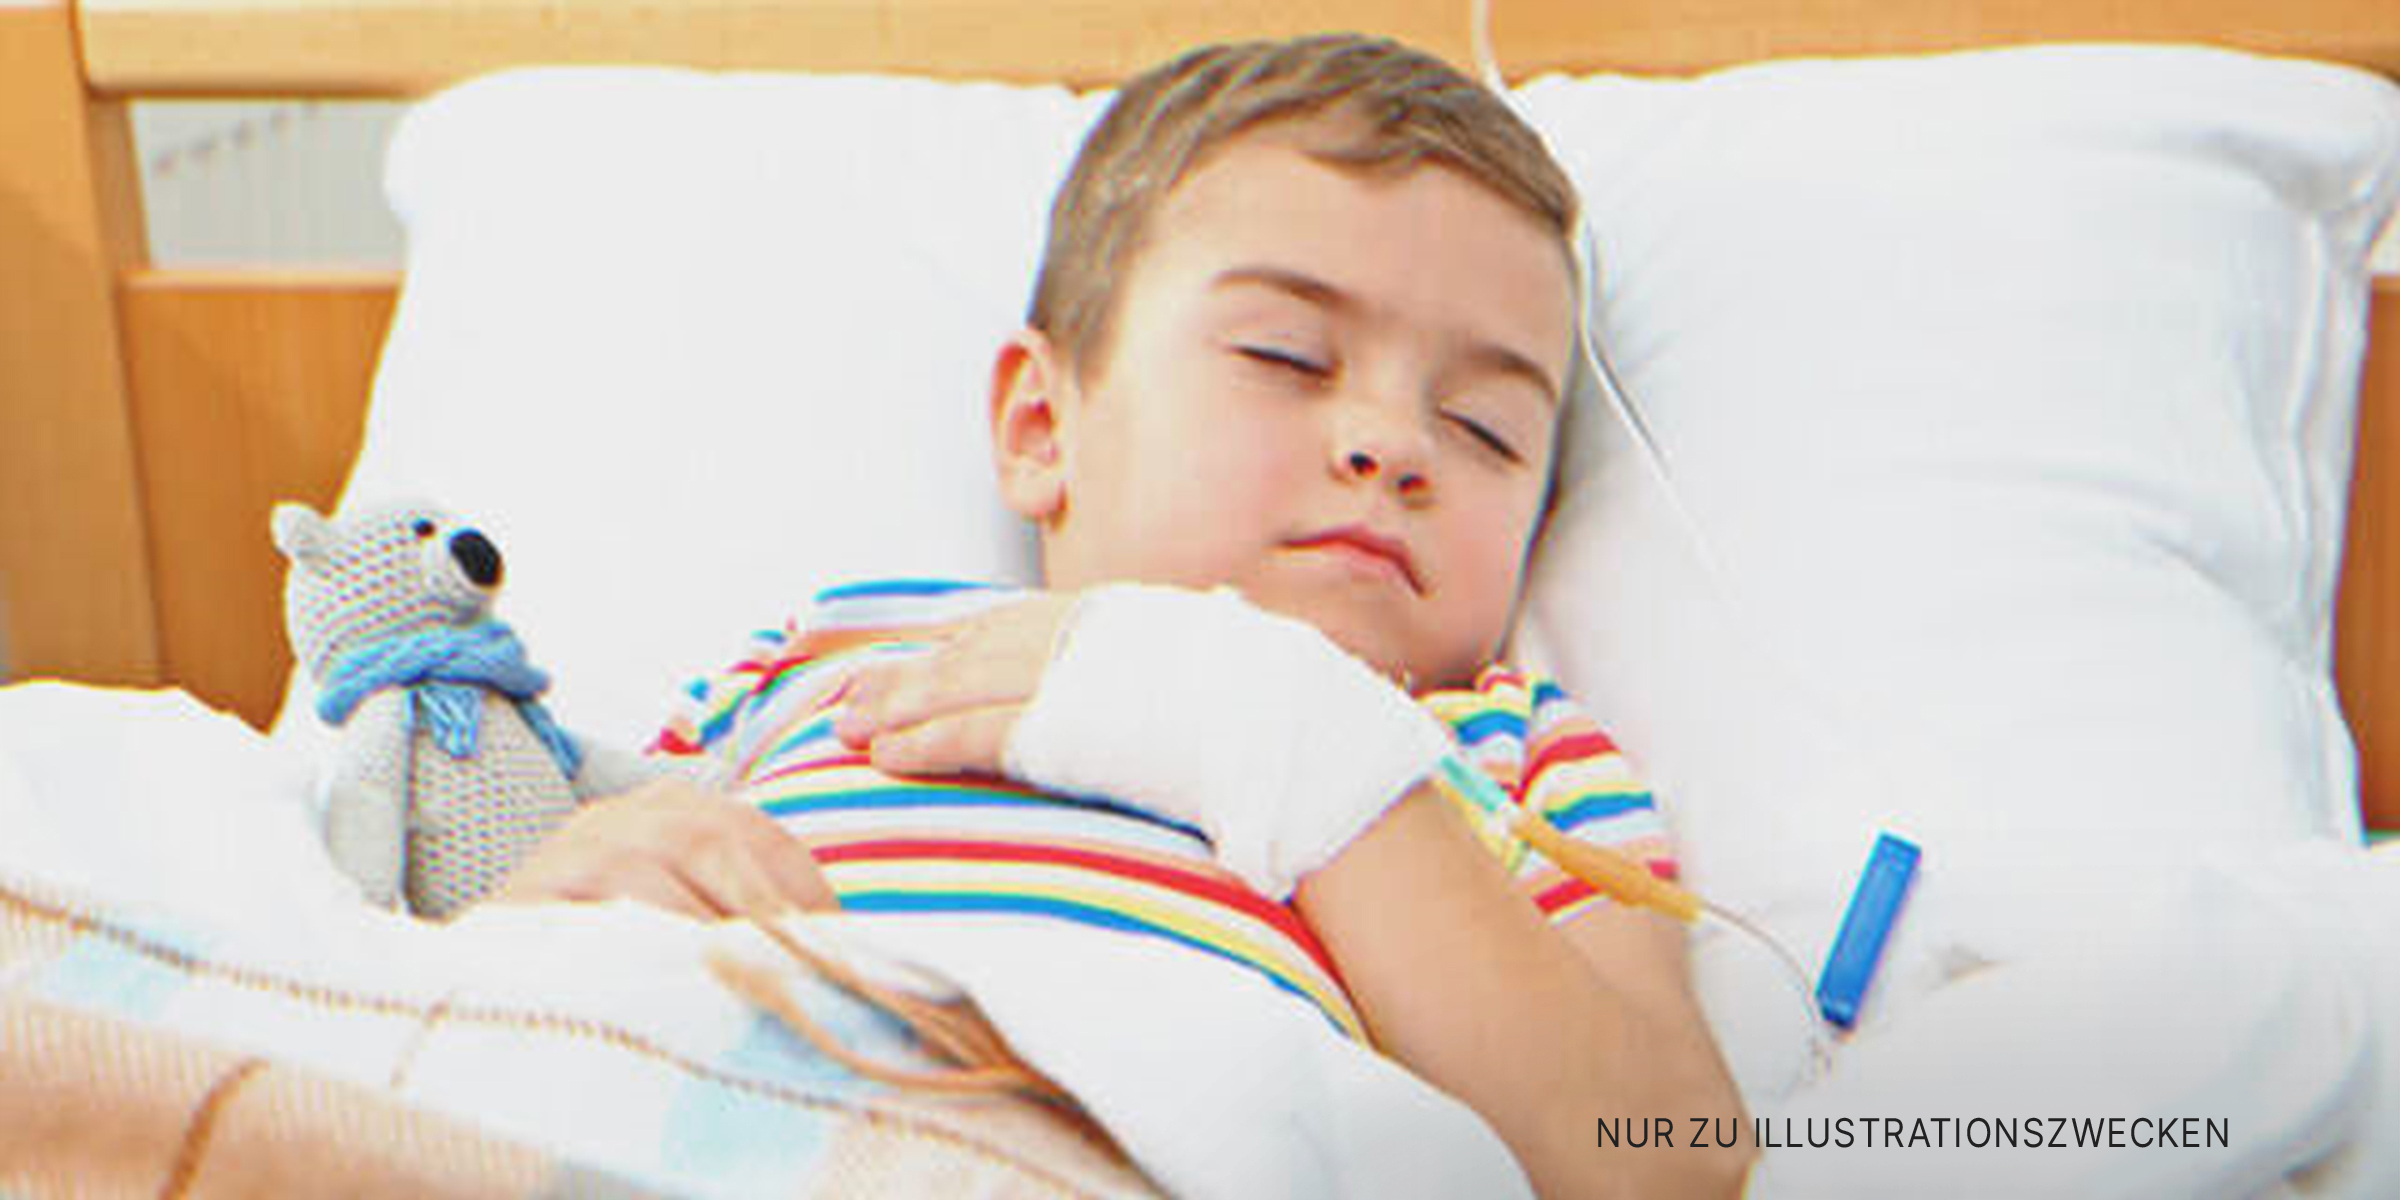 Junge im Krankenhausbett | Quelle: Shutterstock